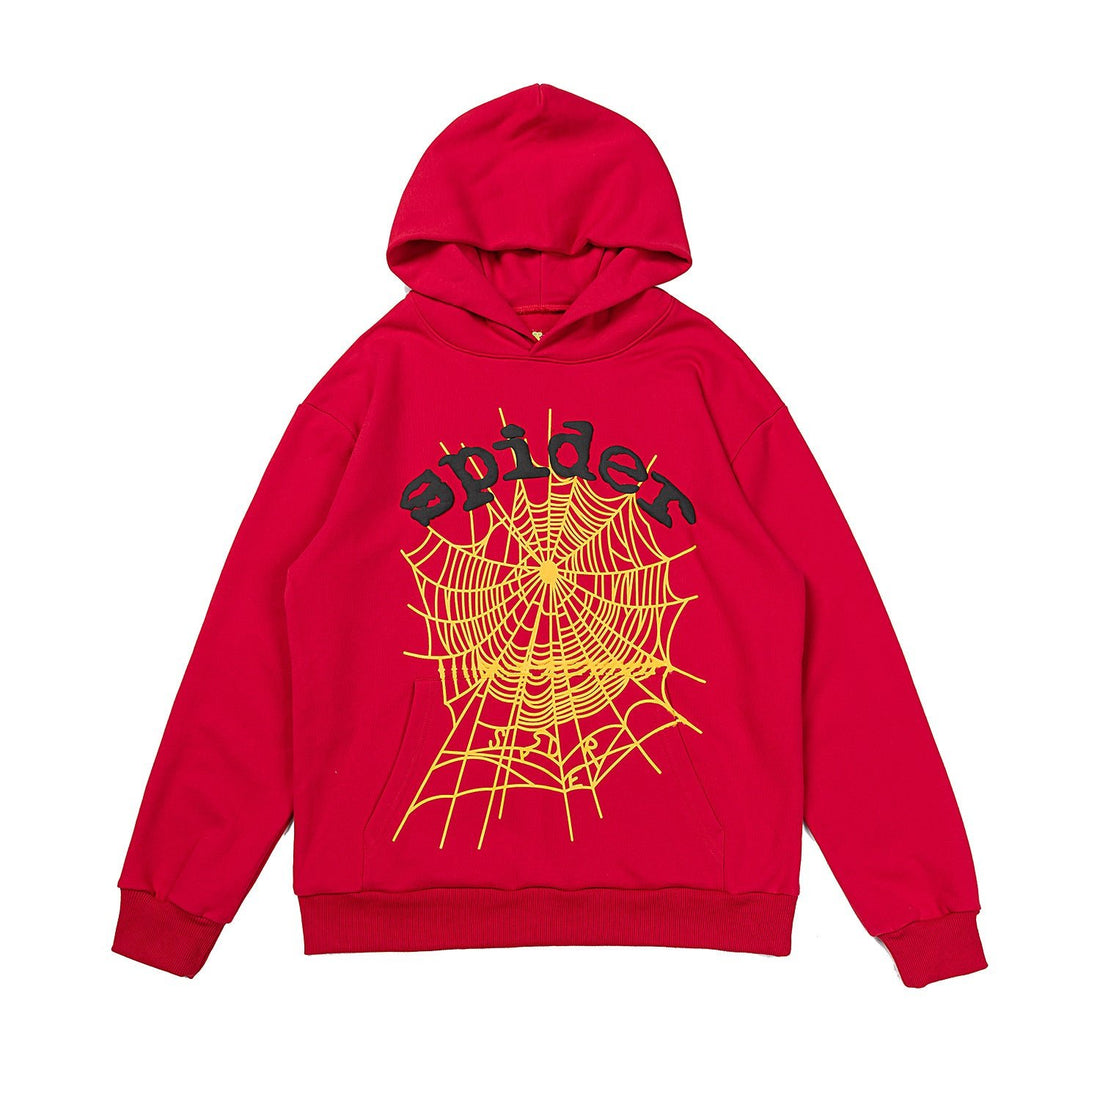 Vibrant Red Sp5der Hoodie - Trendy Web Print Hooded Sweatshirt - Seakoff